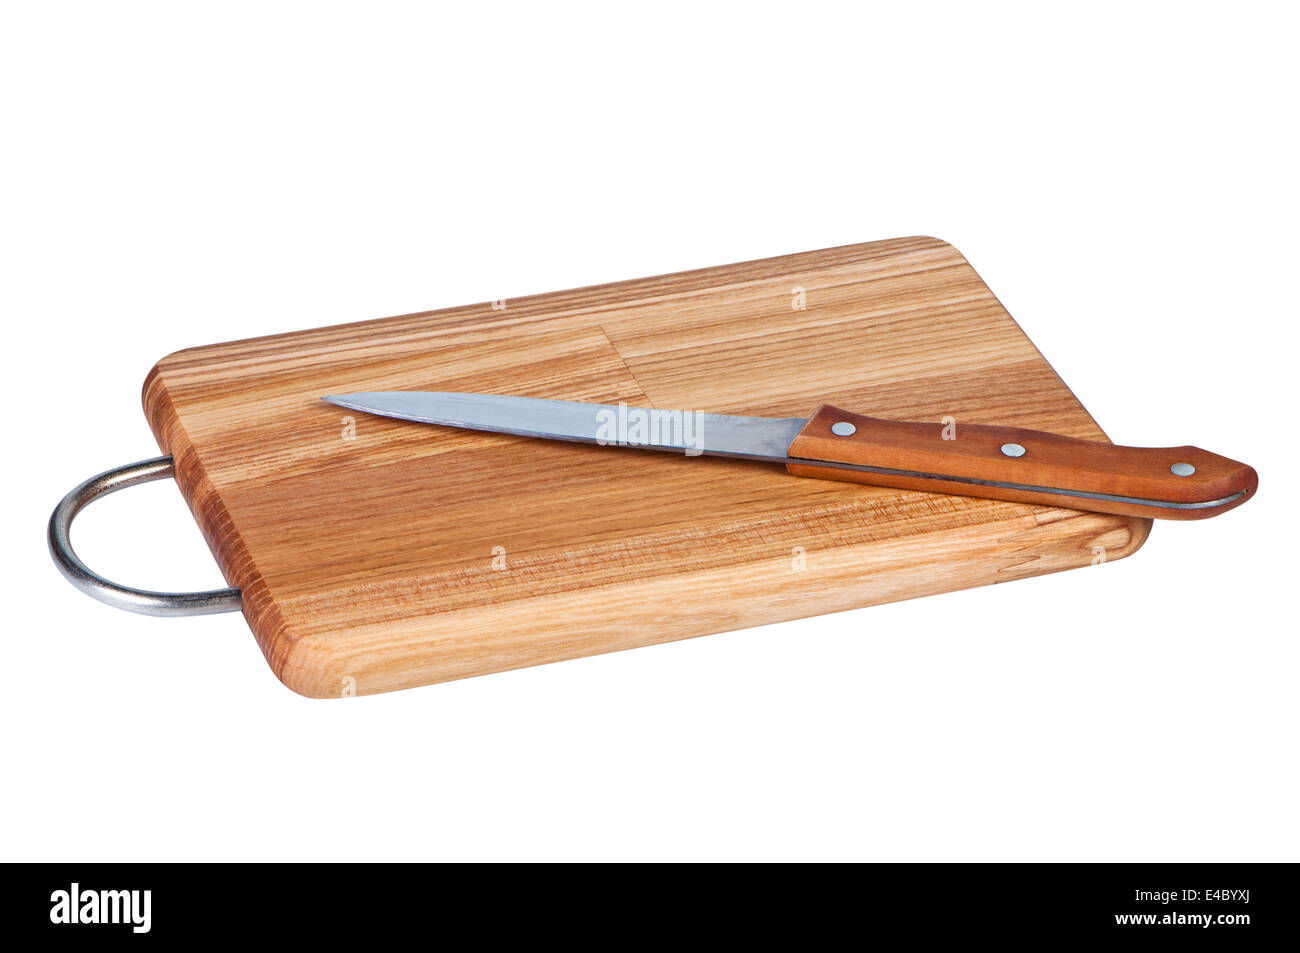 Placa de madera con cuchillo de cocina. Foto de stock